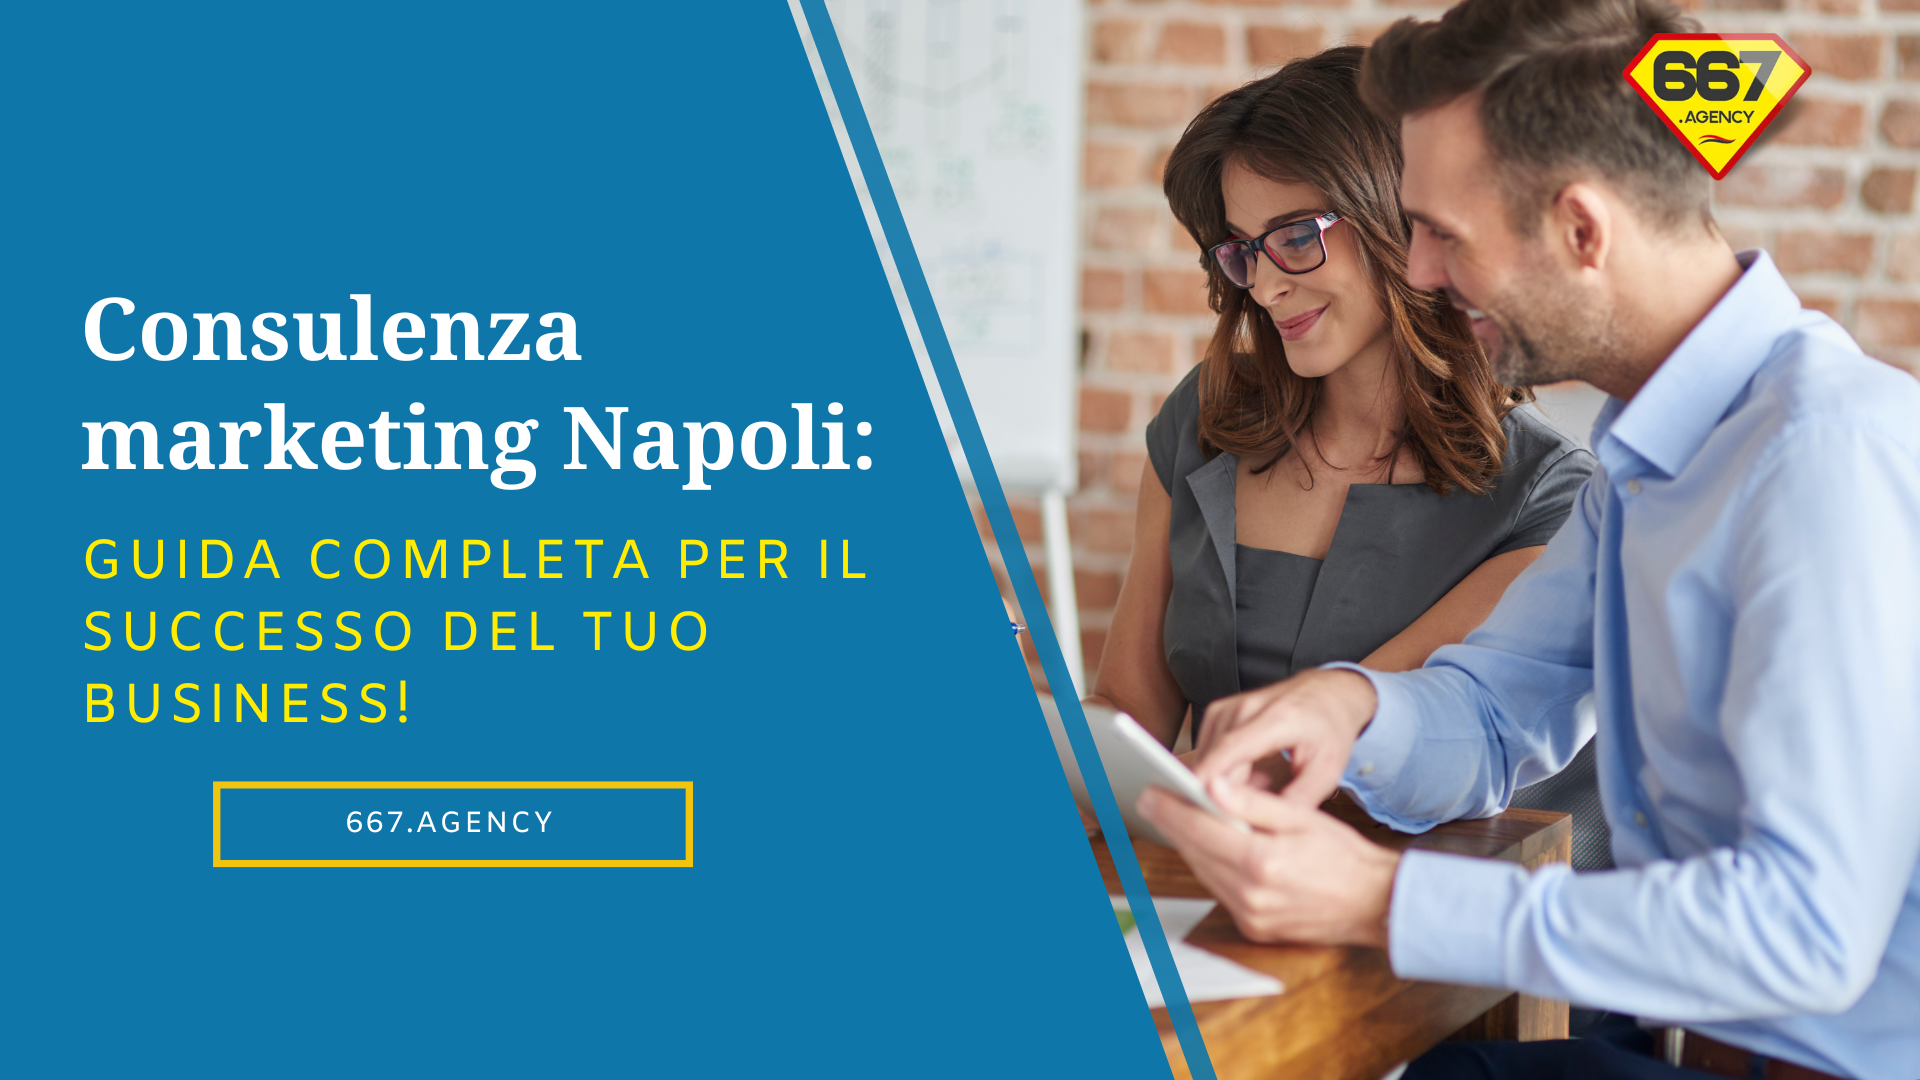 Consulenza marketing Napoli: guida completa per il successo del tuo business